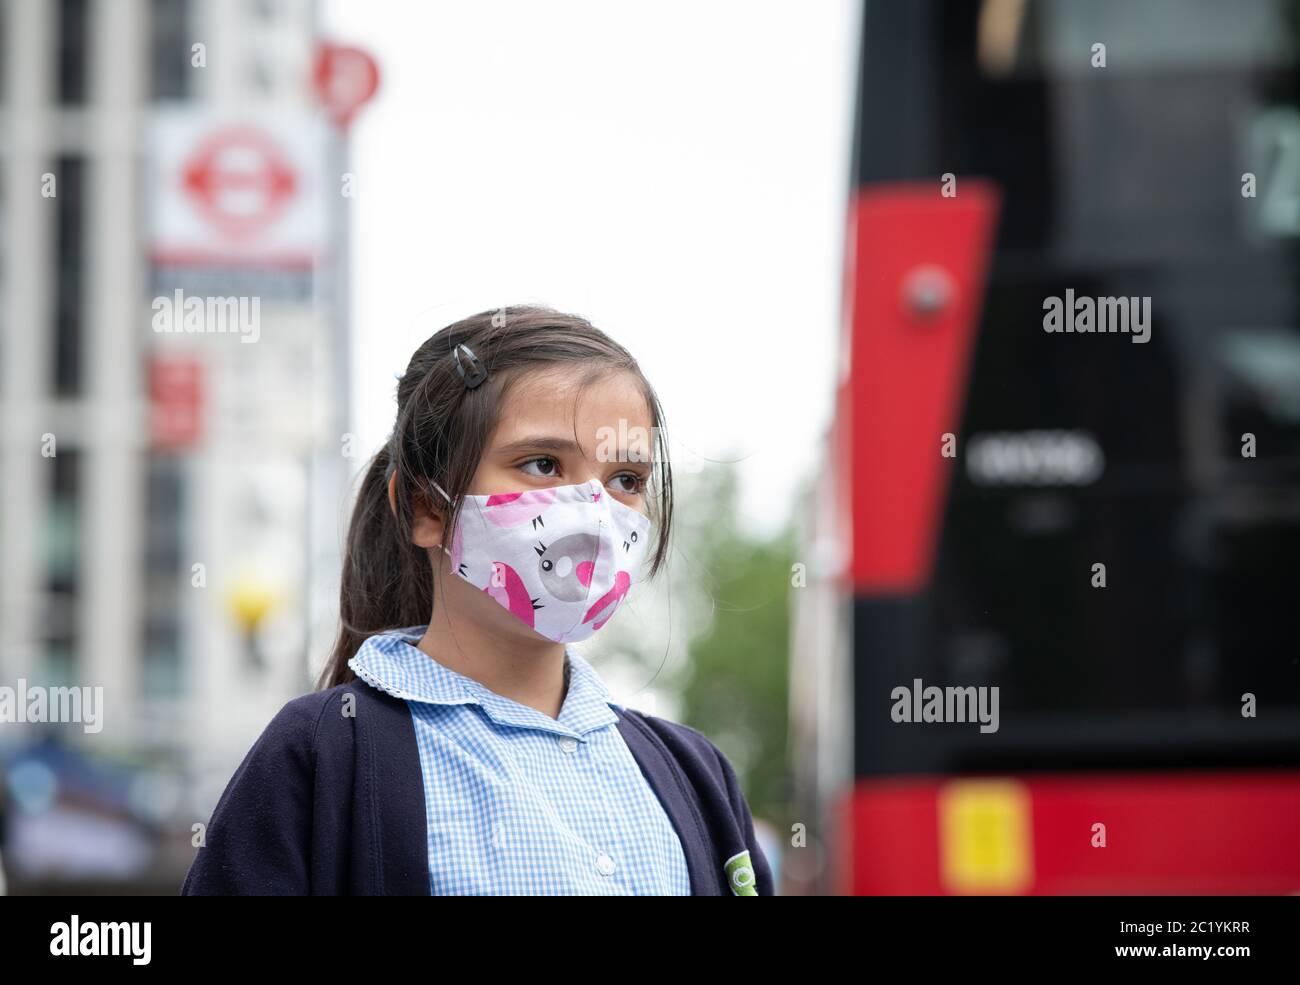 Les enfants portant un masque sur les transports en commun. Autobus Waterloo. Londres, Royaume-Uni. 7 juin 2020. NB: FORMULAIRE DE CONSENTEMENT SIGNÉ POUR LA FILLE EN PHOTO Banque D'Images